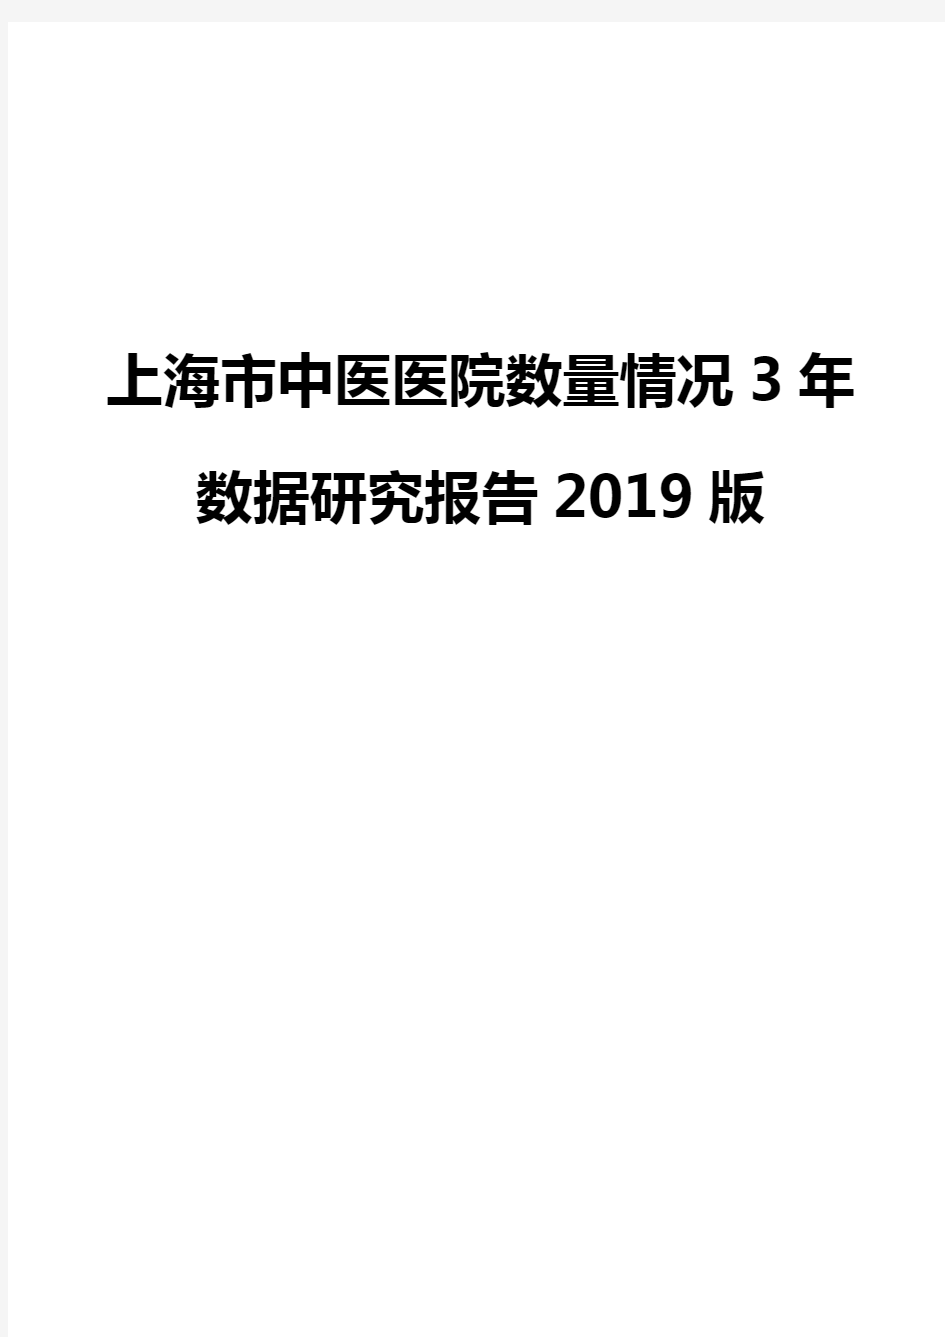 上海市中医医院数量情况3年数据研究报告2019版